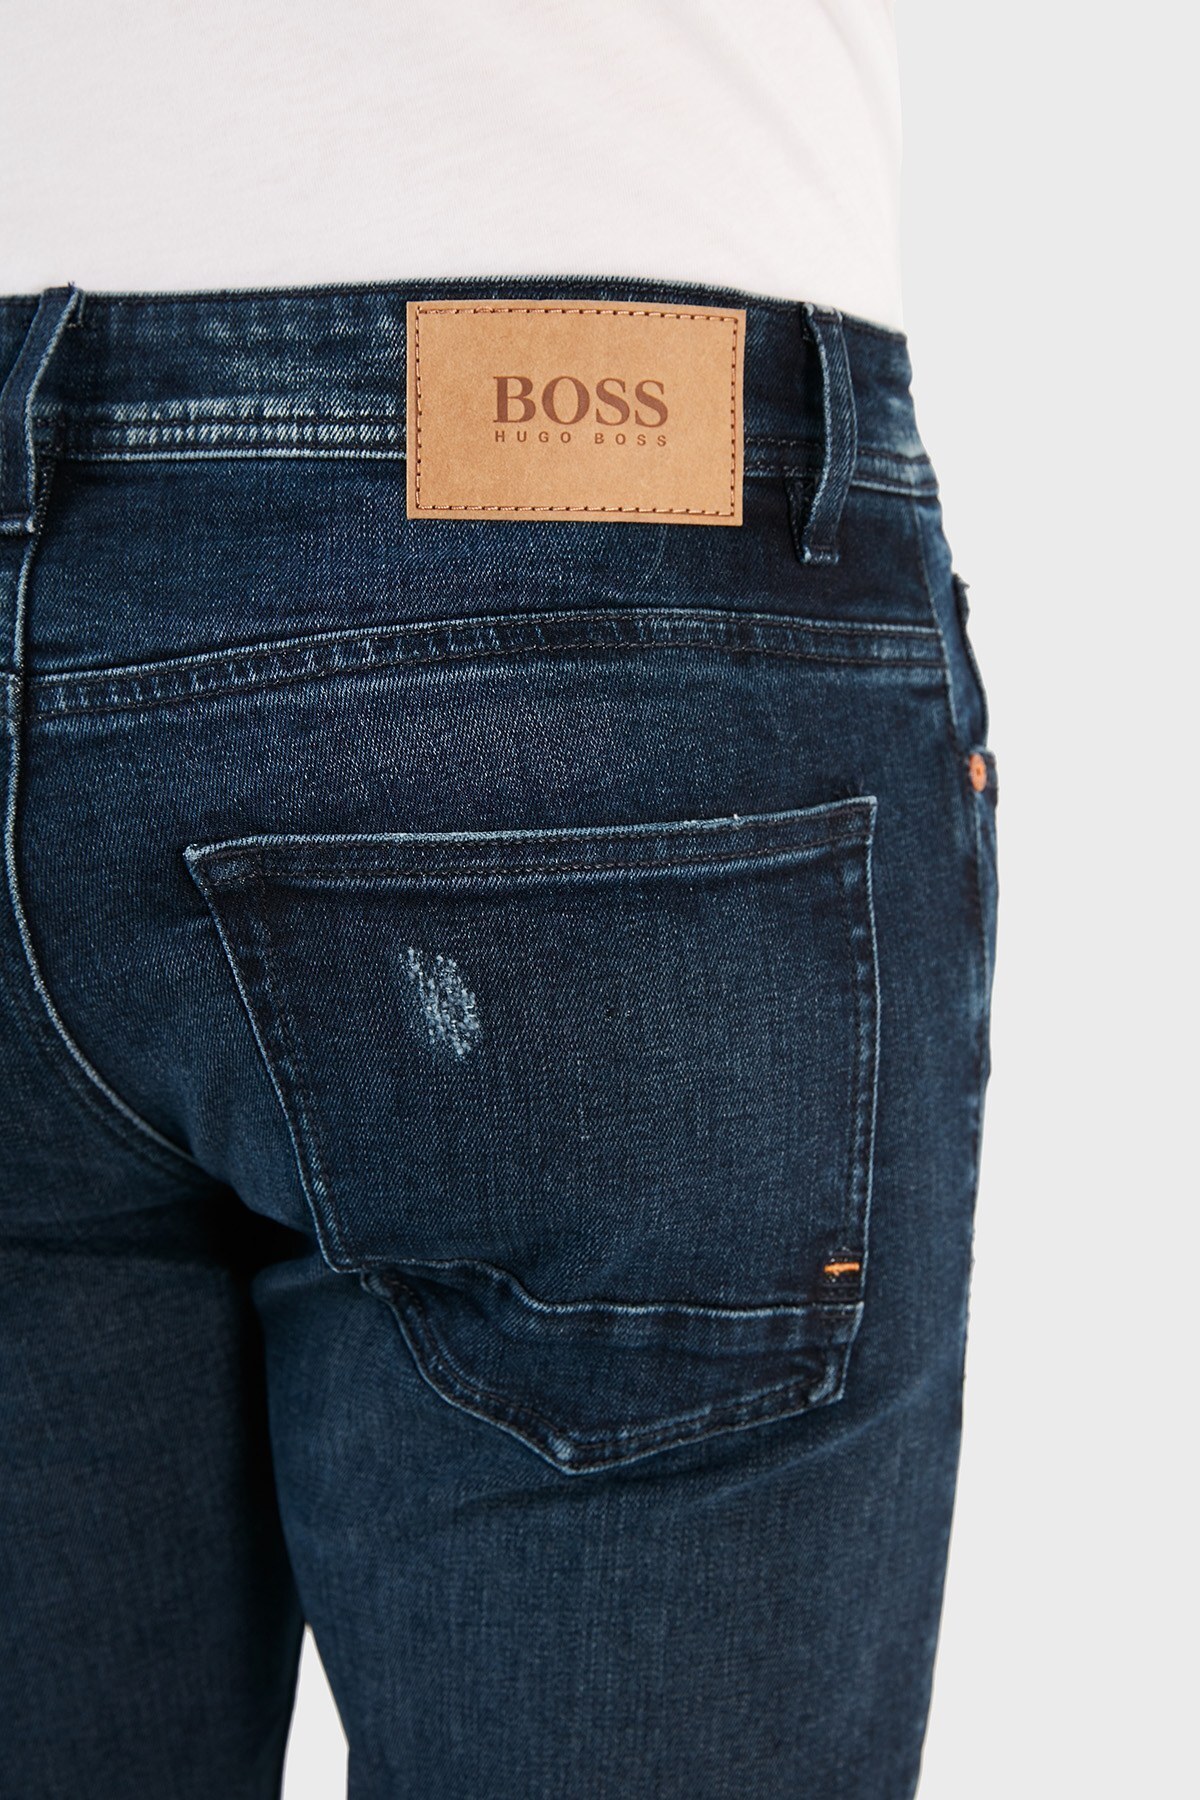 Hugo Boss Pamuklu Slim Fit Jeans Erkek Kot Pantolon 50458307 414 LACİVERT